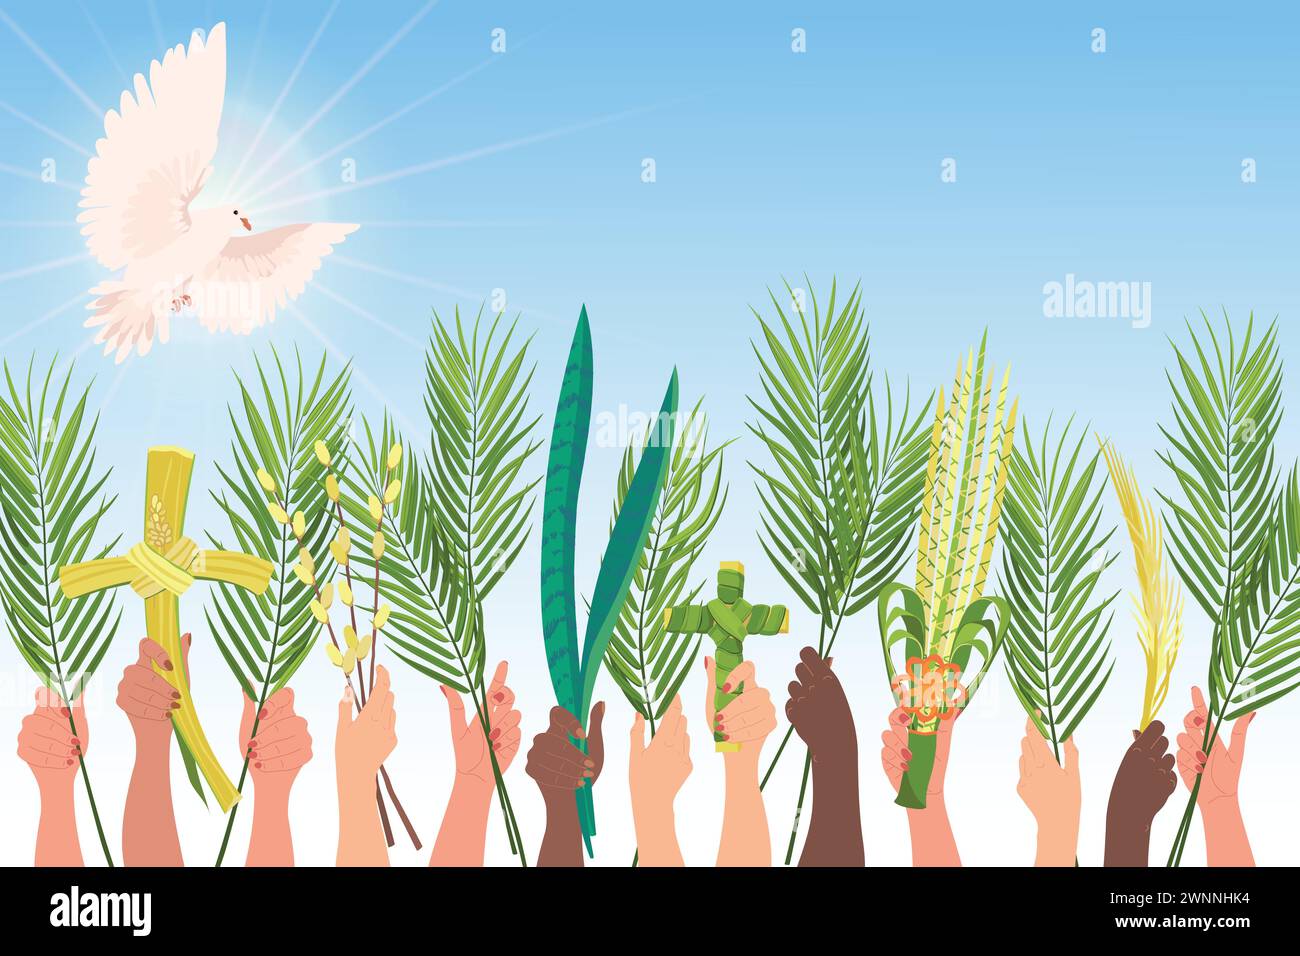 Célébrations du dimanche des palmiers. Les mains de personnes de différentes nationalités sont élevées avec des branches de palmier, sansevieria et une croix. Colombe blanche dans le ciel, th Illustration de Vecteur